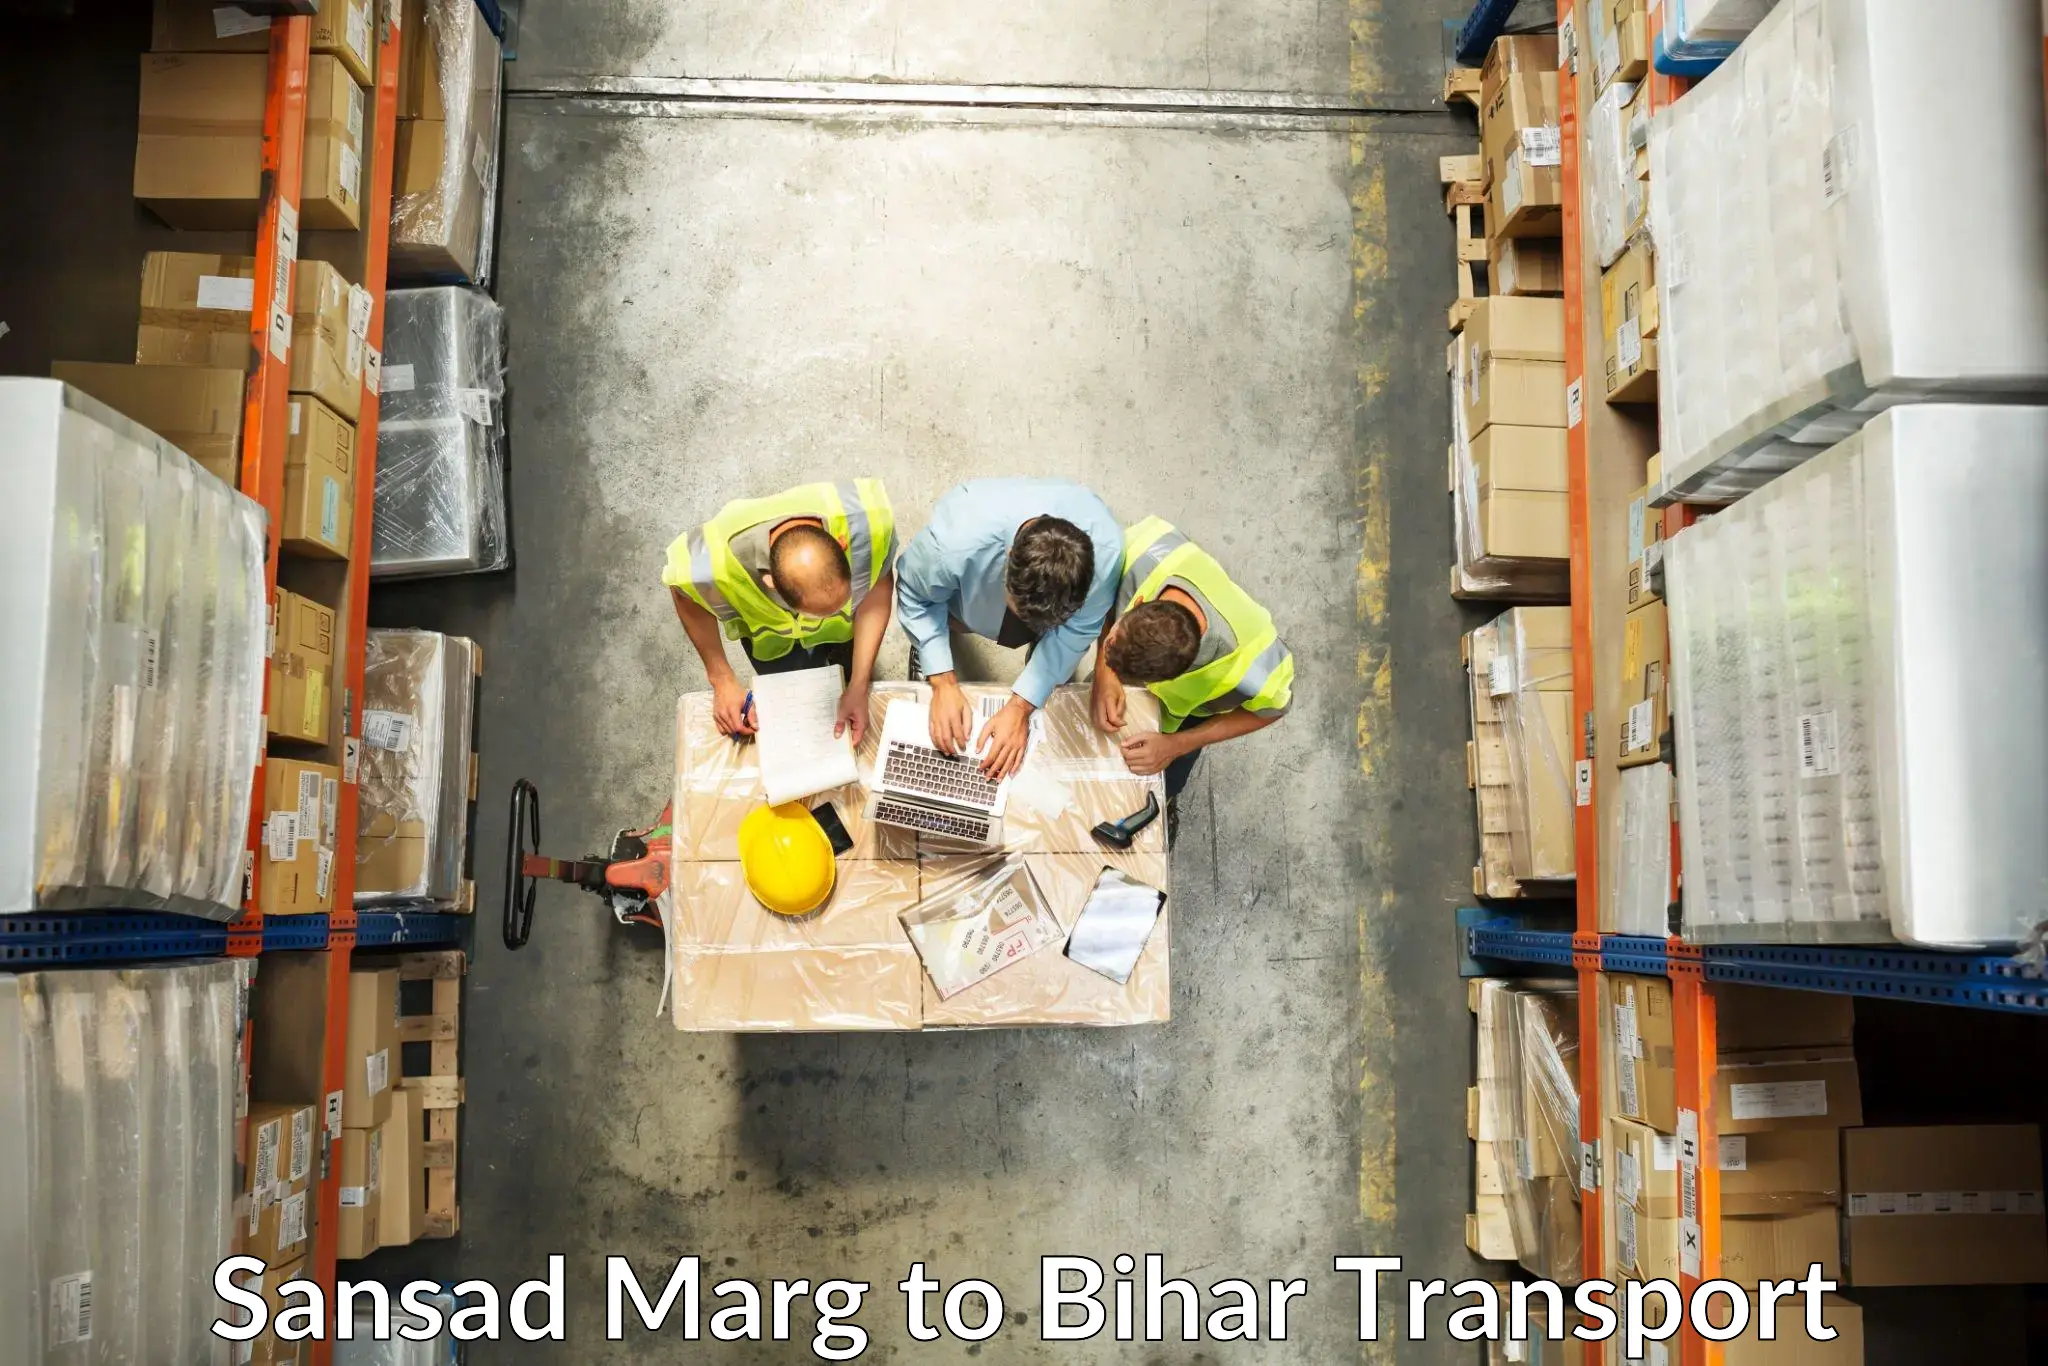 Road transport online services Sansad Marg to Bihar